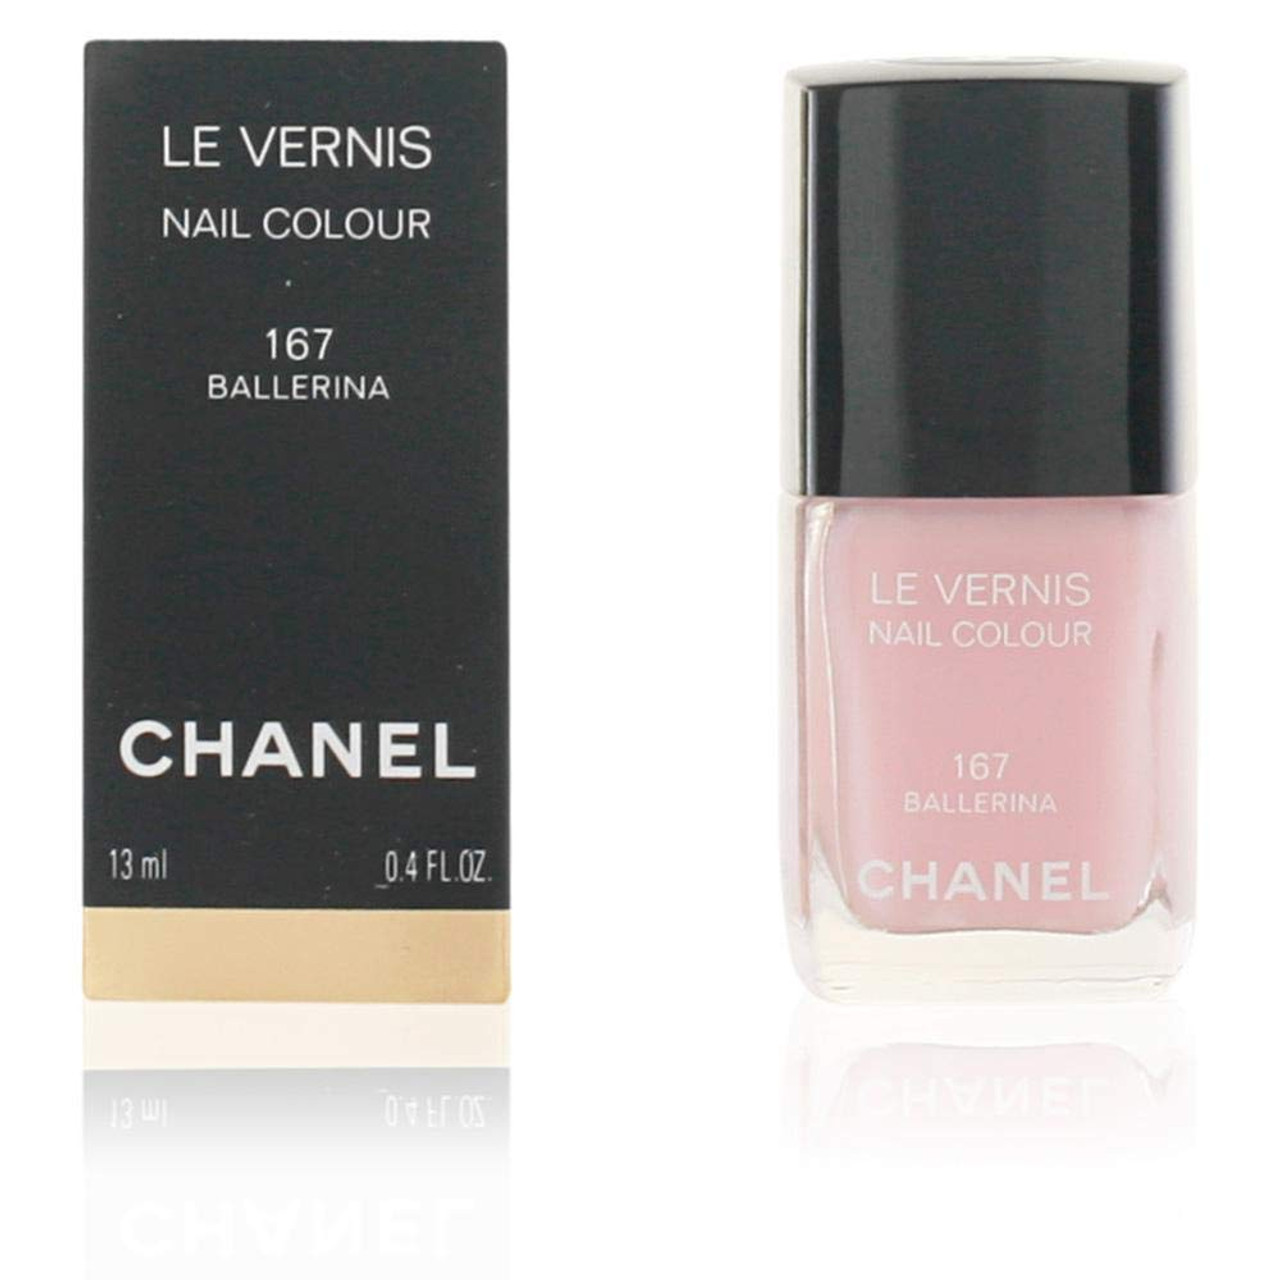 Chanel Le Vernis Longwear Nail Colour - 08 Pirate 0.4 oz Nail Polish 